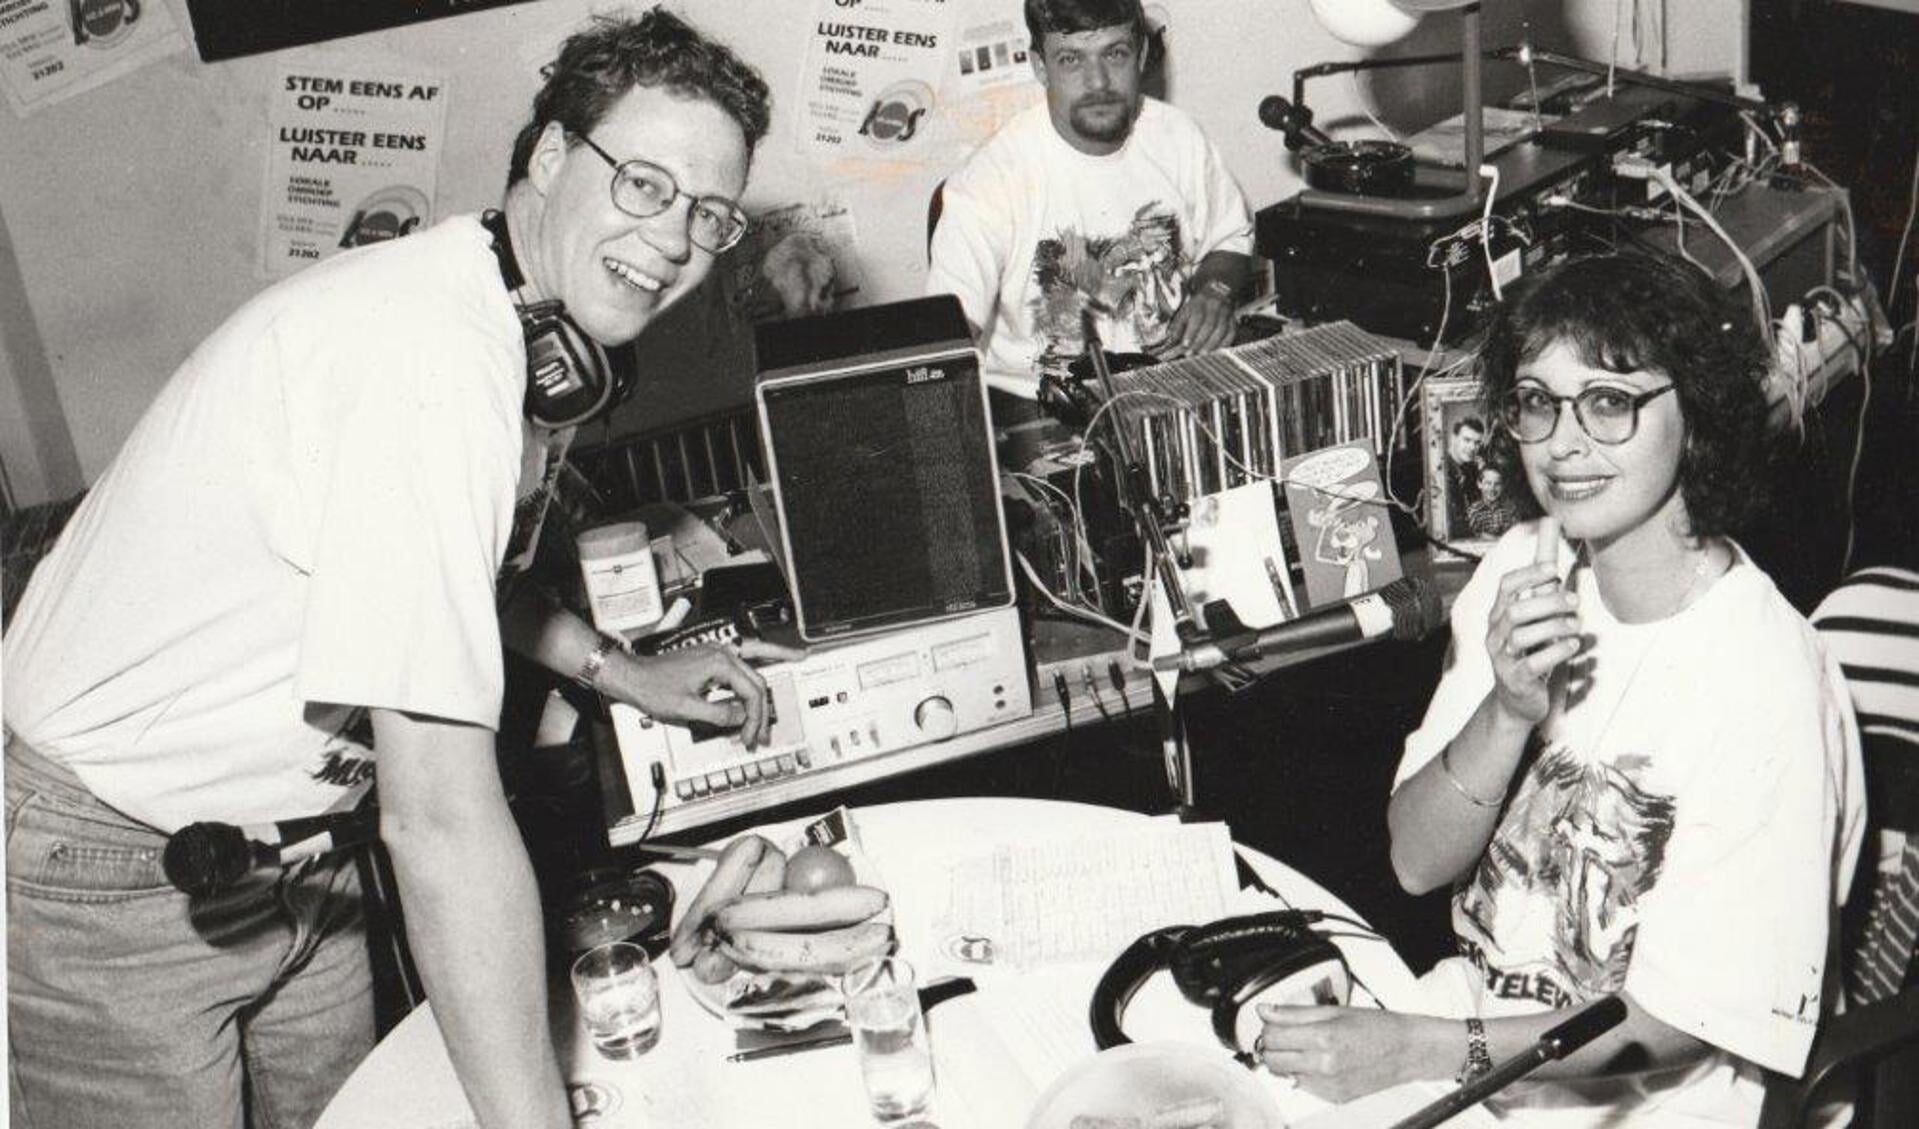 Nico Laagland Winder, Marja Mosk met achter hen Harrie Stam, verantwoordelijk voor de techniek tijdens de recordpoging in juni 1993. (Foto: aangeleverd)